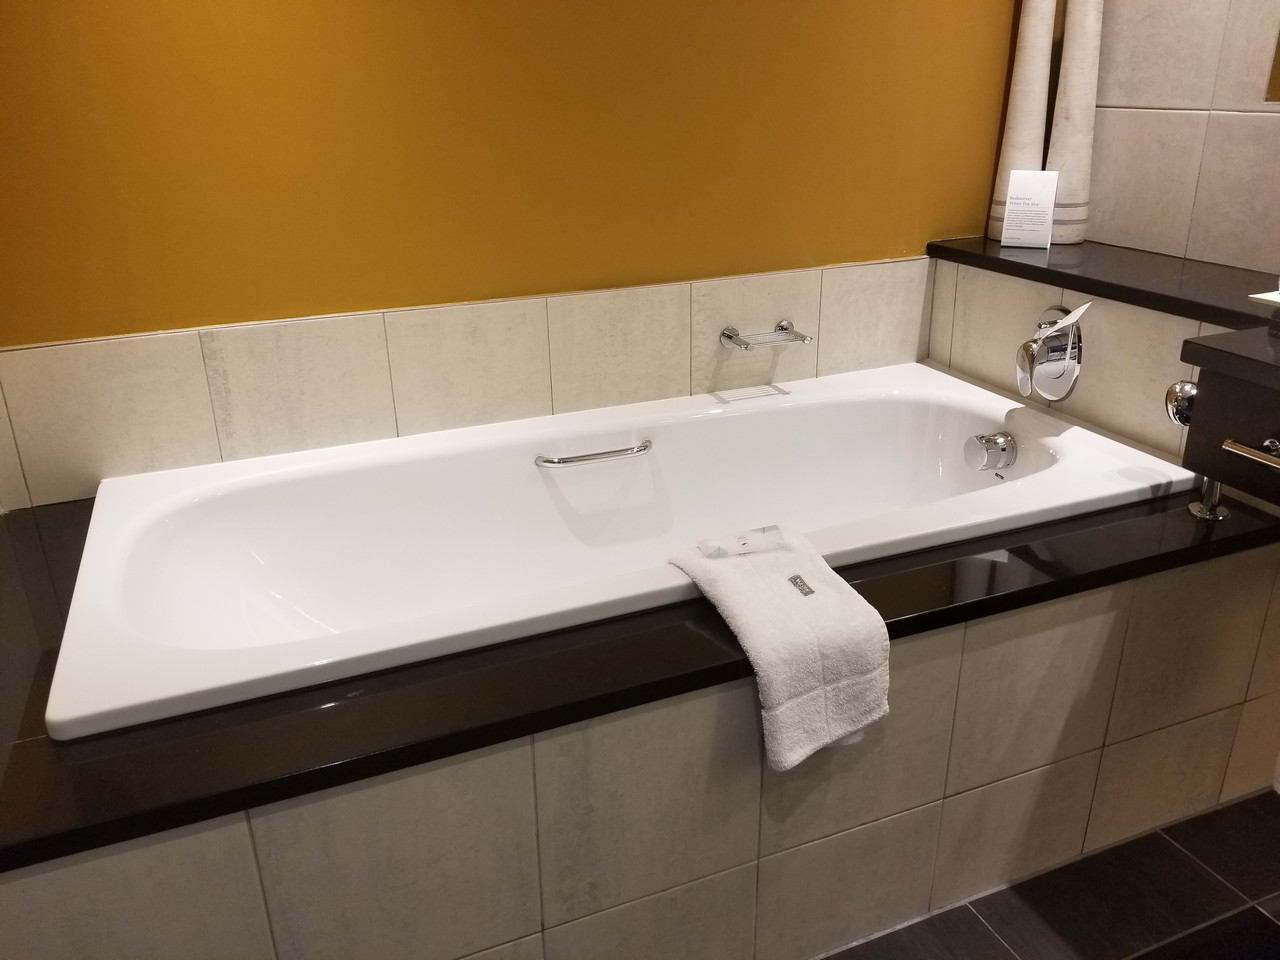 a bathtub with a towel on the edge